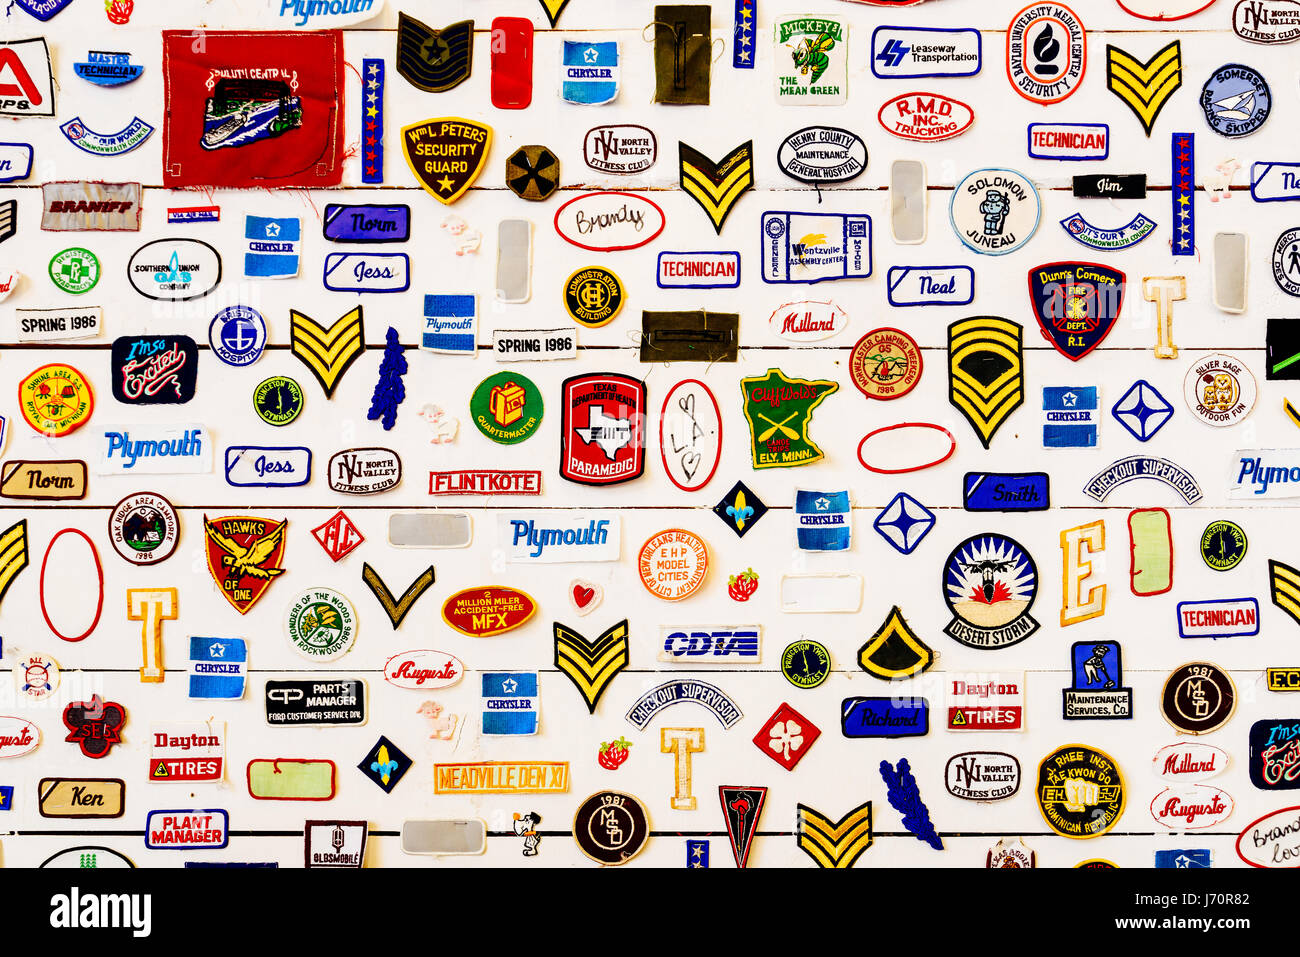 VALENCIA, Spanien - 2. August 2016: Berühmte Markenzeichen und Symbole Sammlung an einer Wand. Stockfoto